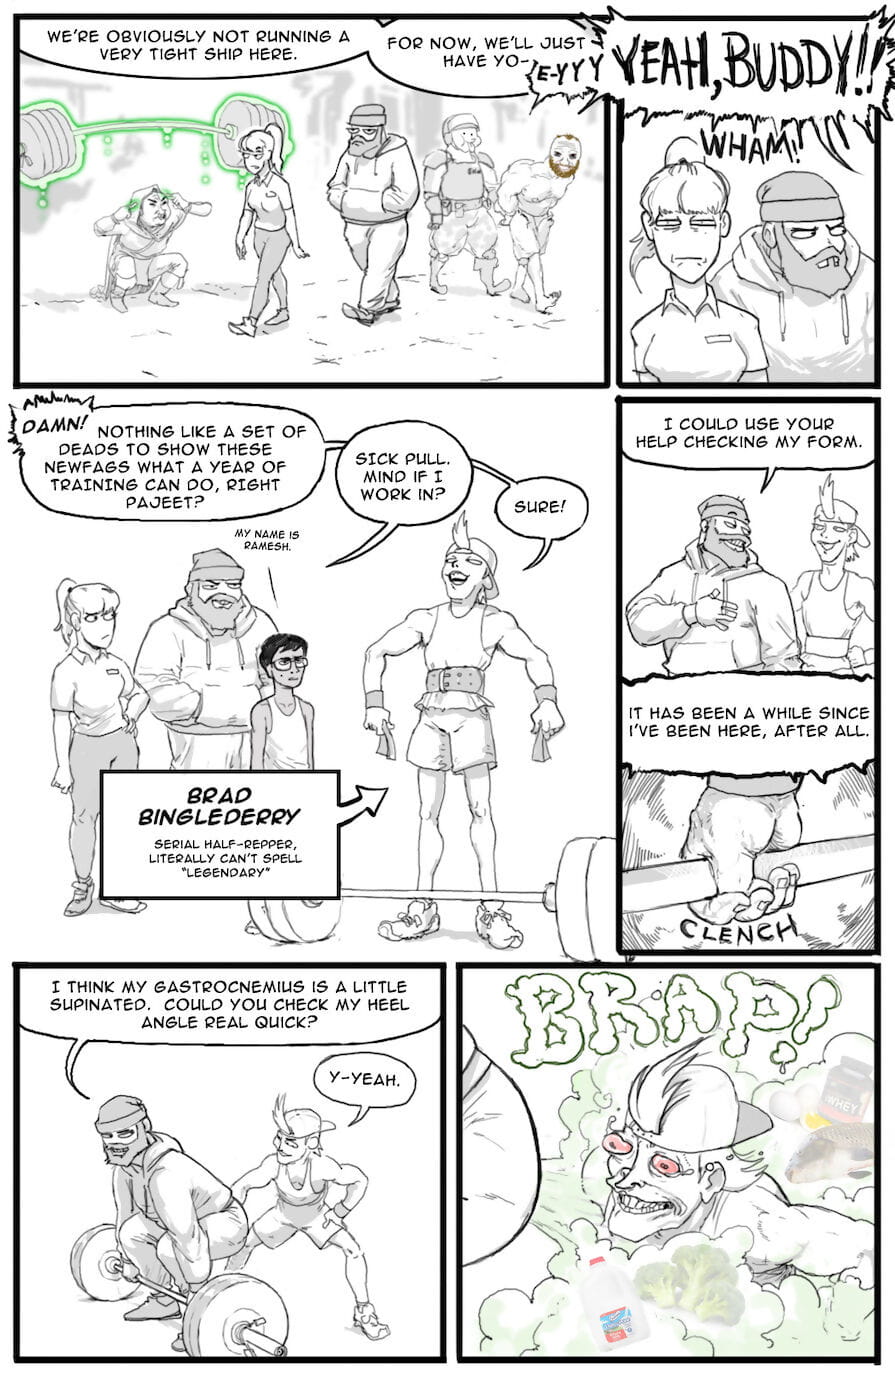 /fit/ comics PARTIE 3 page 1